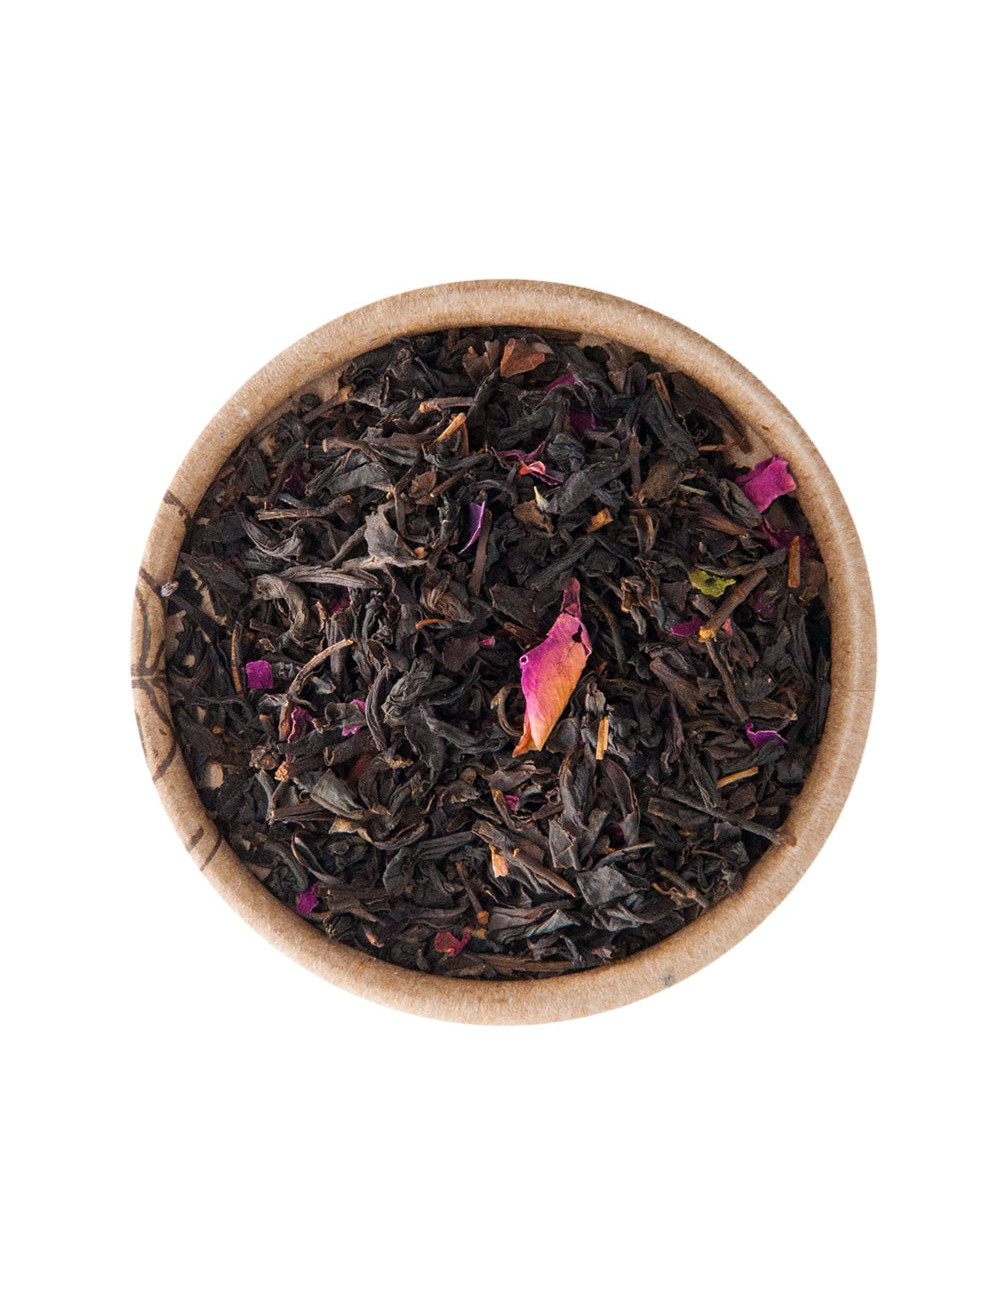 China Rose tè rosso aromatizzato - La Pianta del Tè shop online